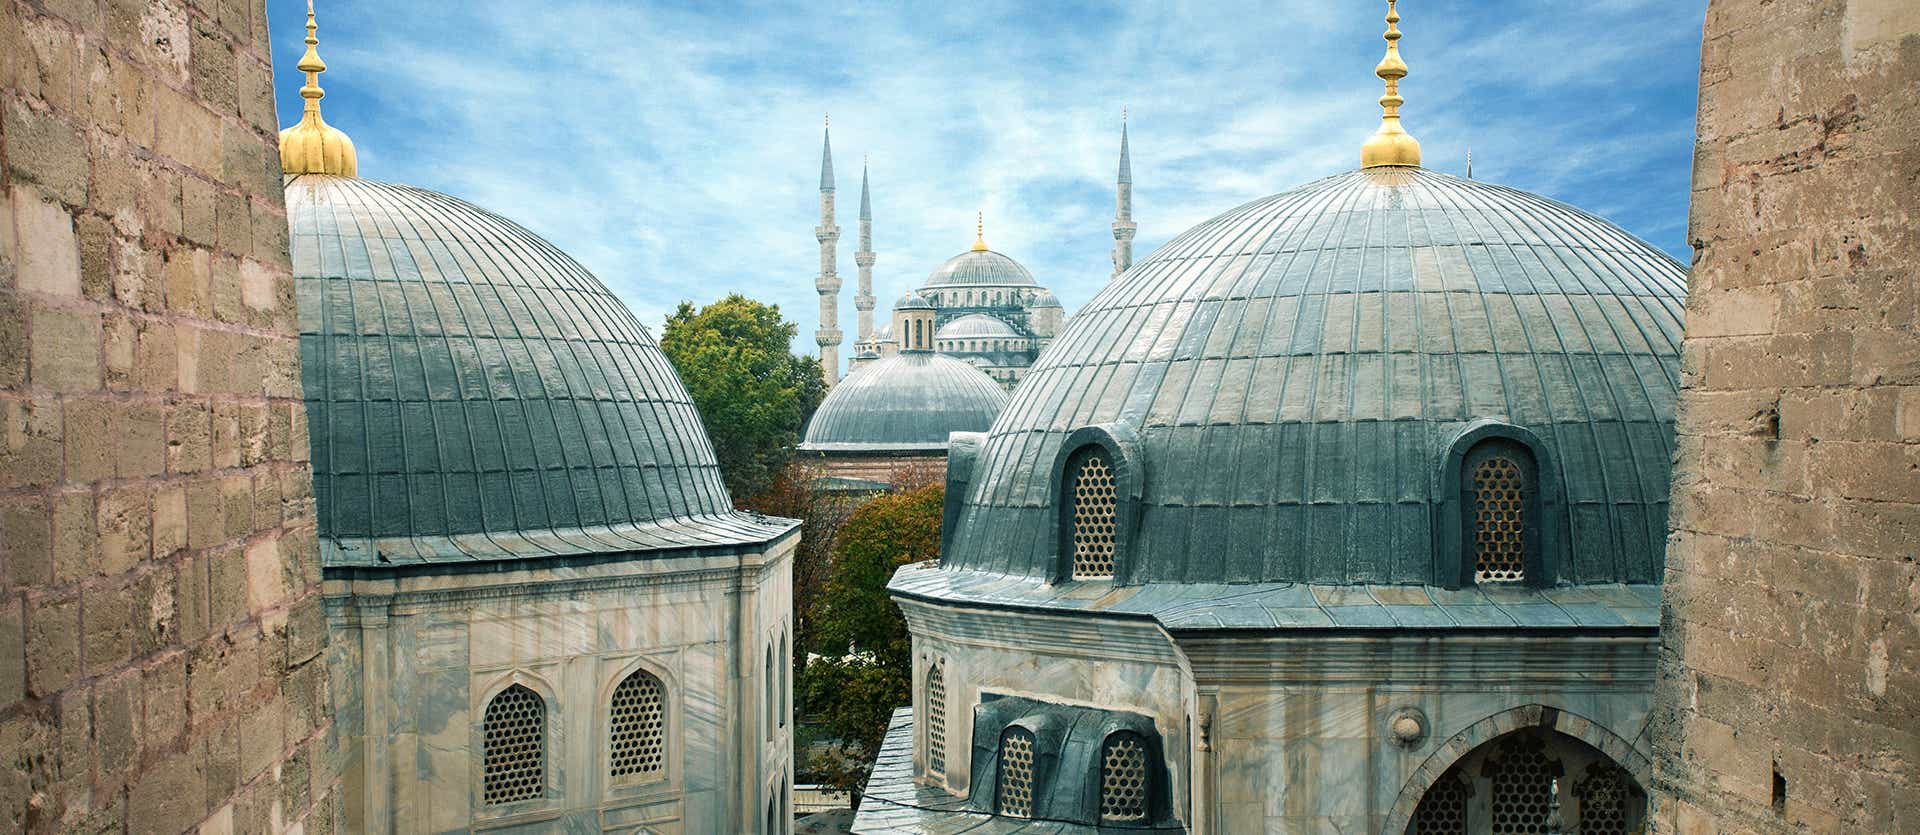 Mezquita Azul <span class="iconos separador"></span> Estambul